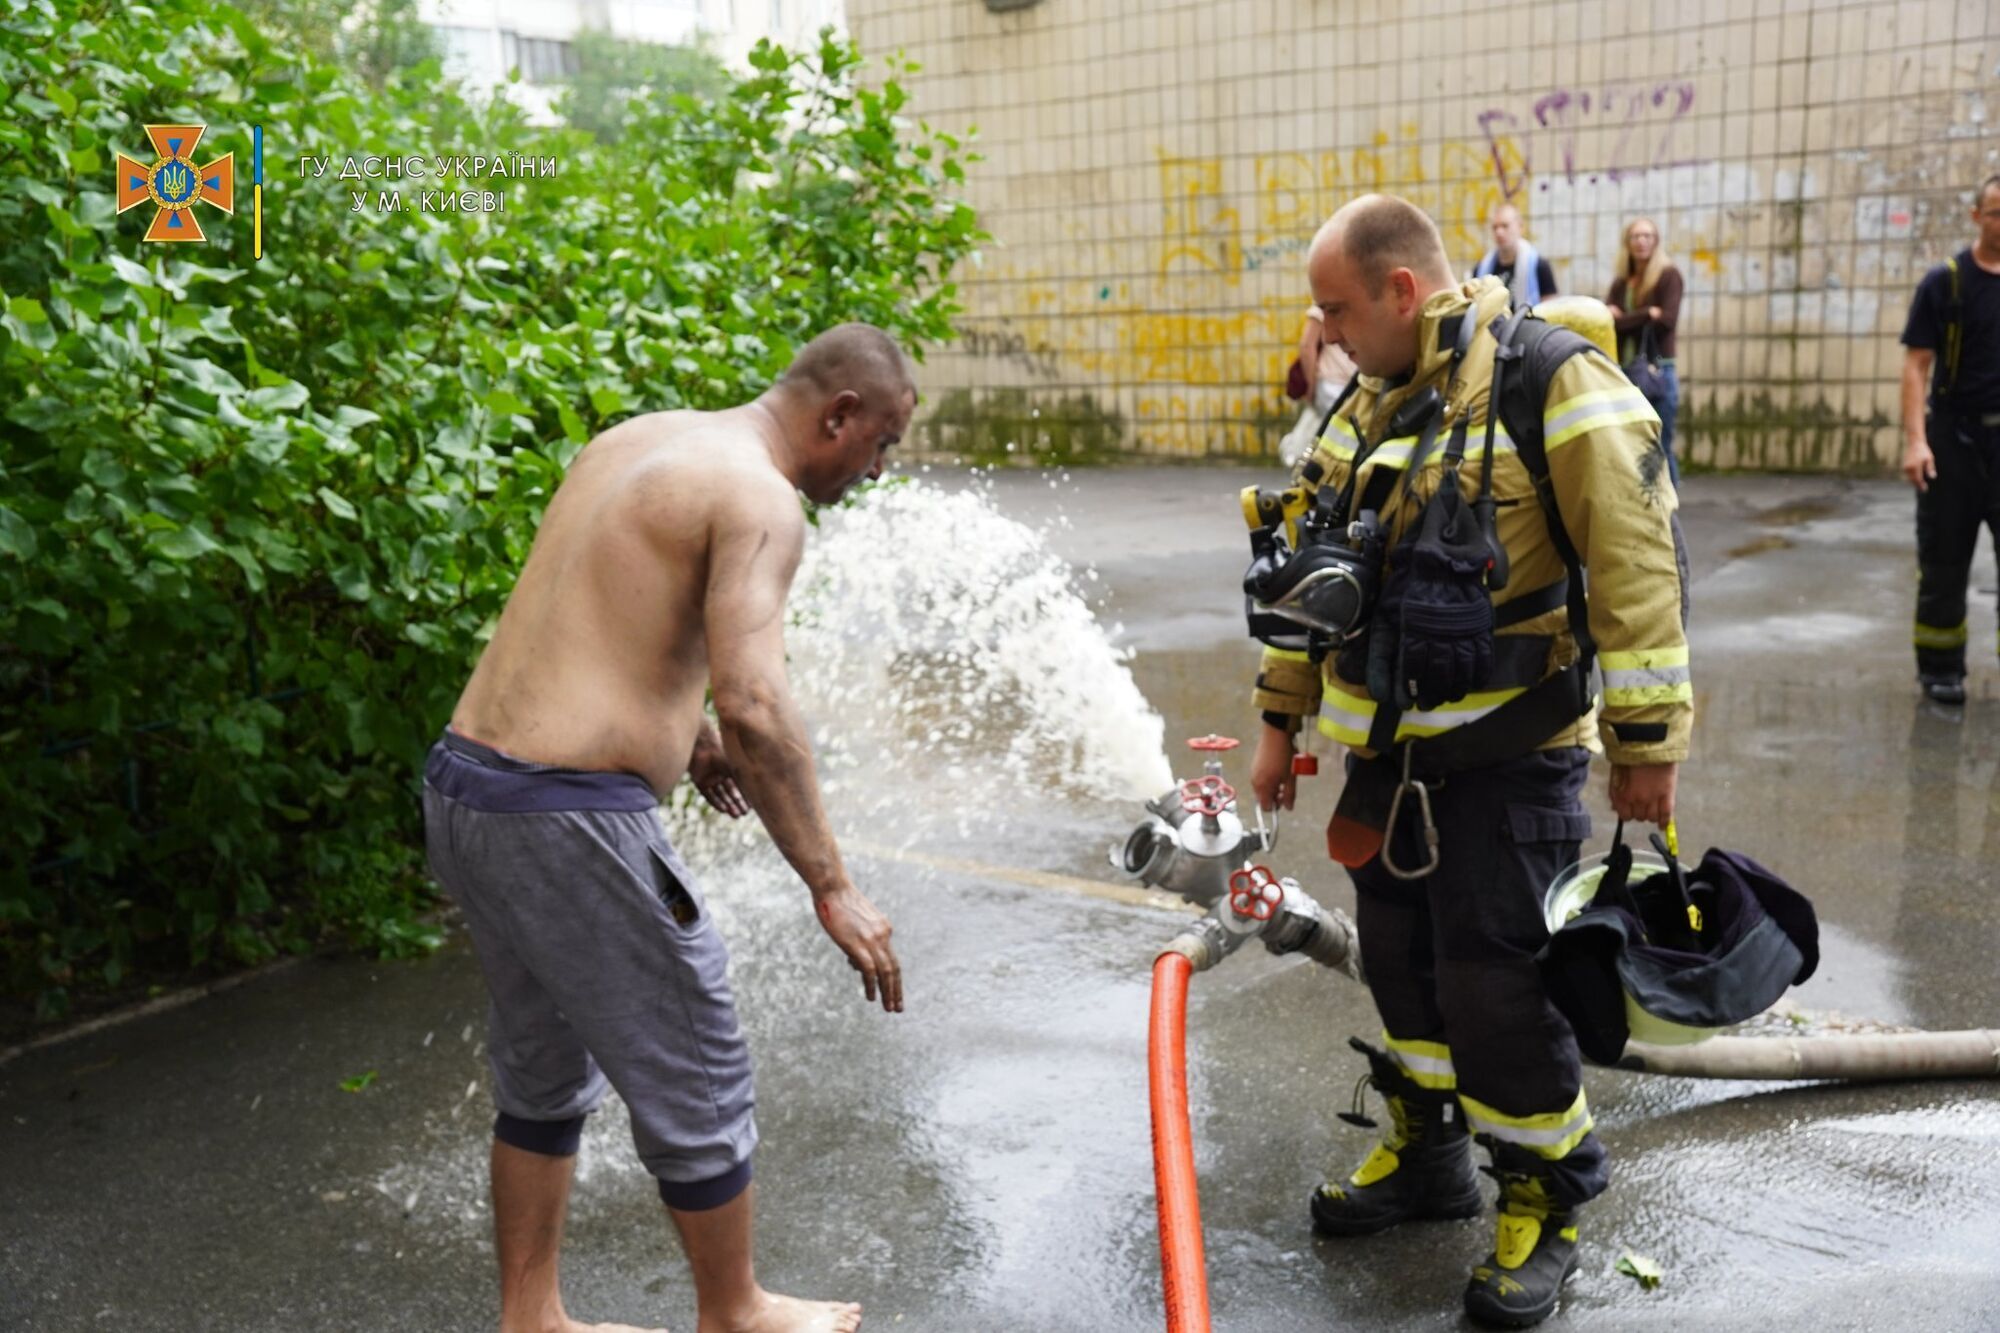 В Киеве горела квартира в многоэтажки: пожарные с помощью автолестницы спасли мужчину. Фото